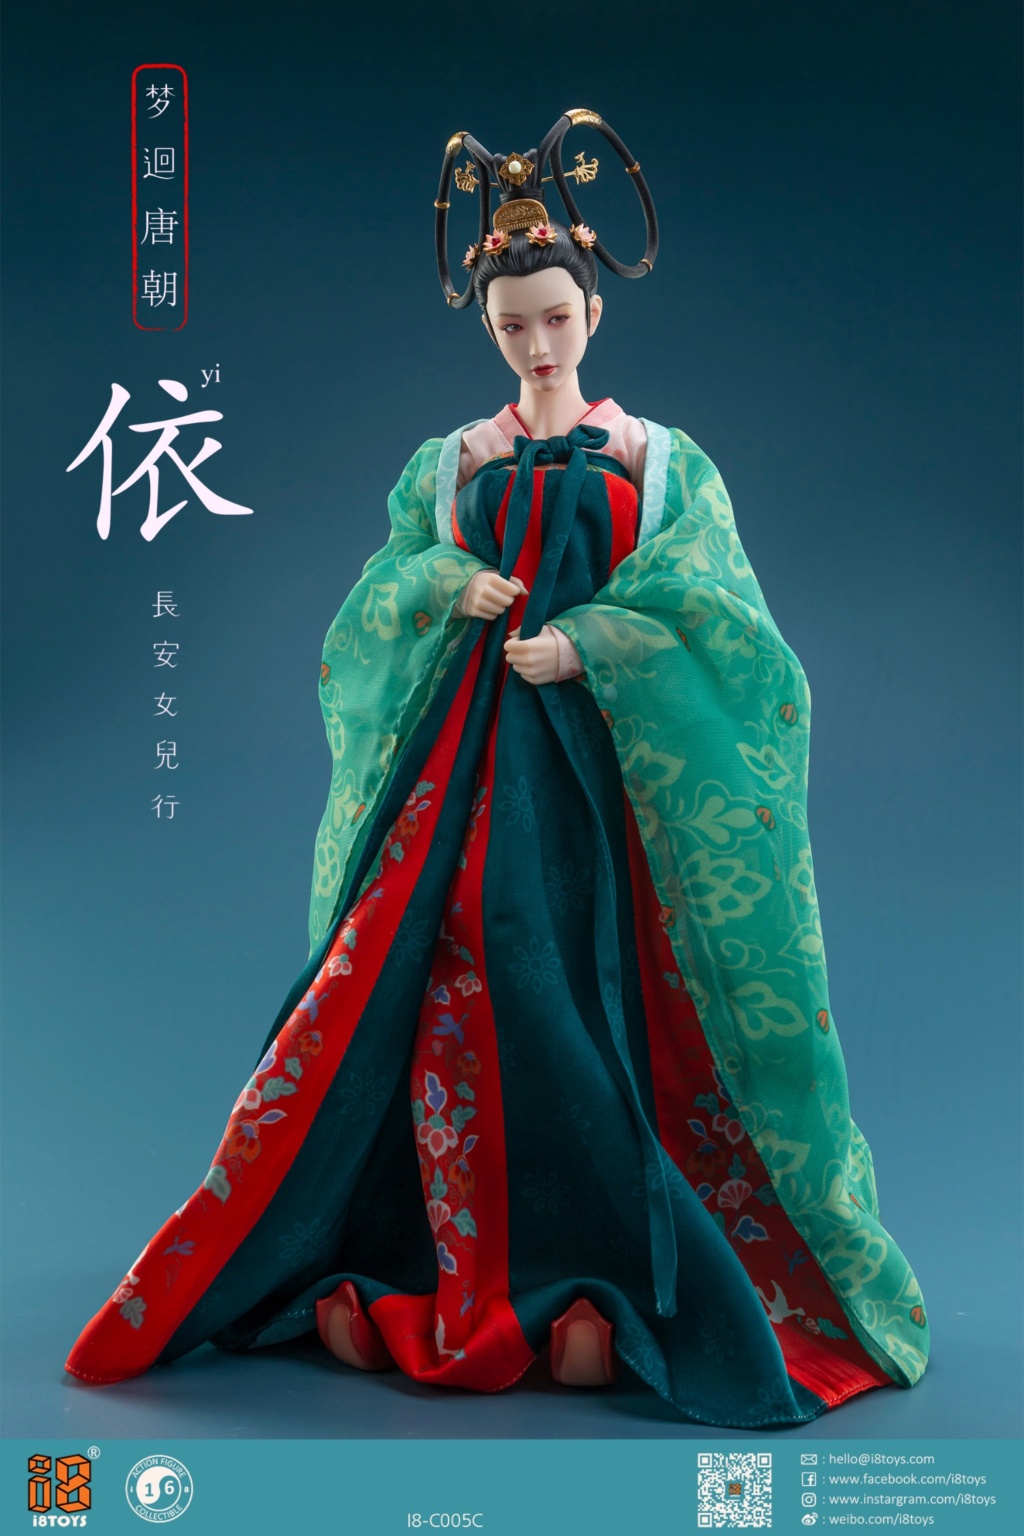 clothingsets - NEW PRODUCT: I8Toys: I8-C005 1/6 Scale Han Chinese Clothing sets 11450610